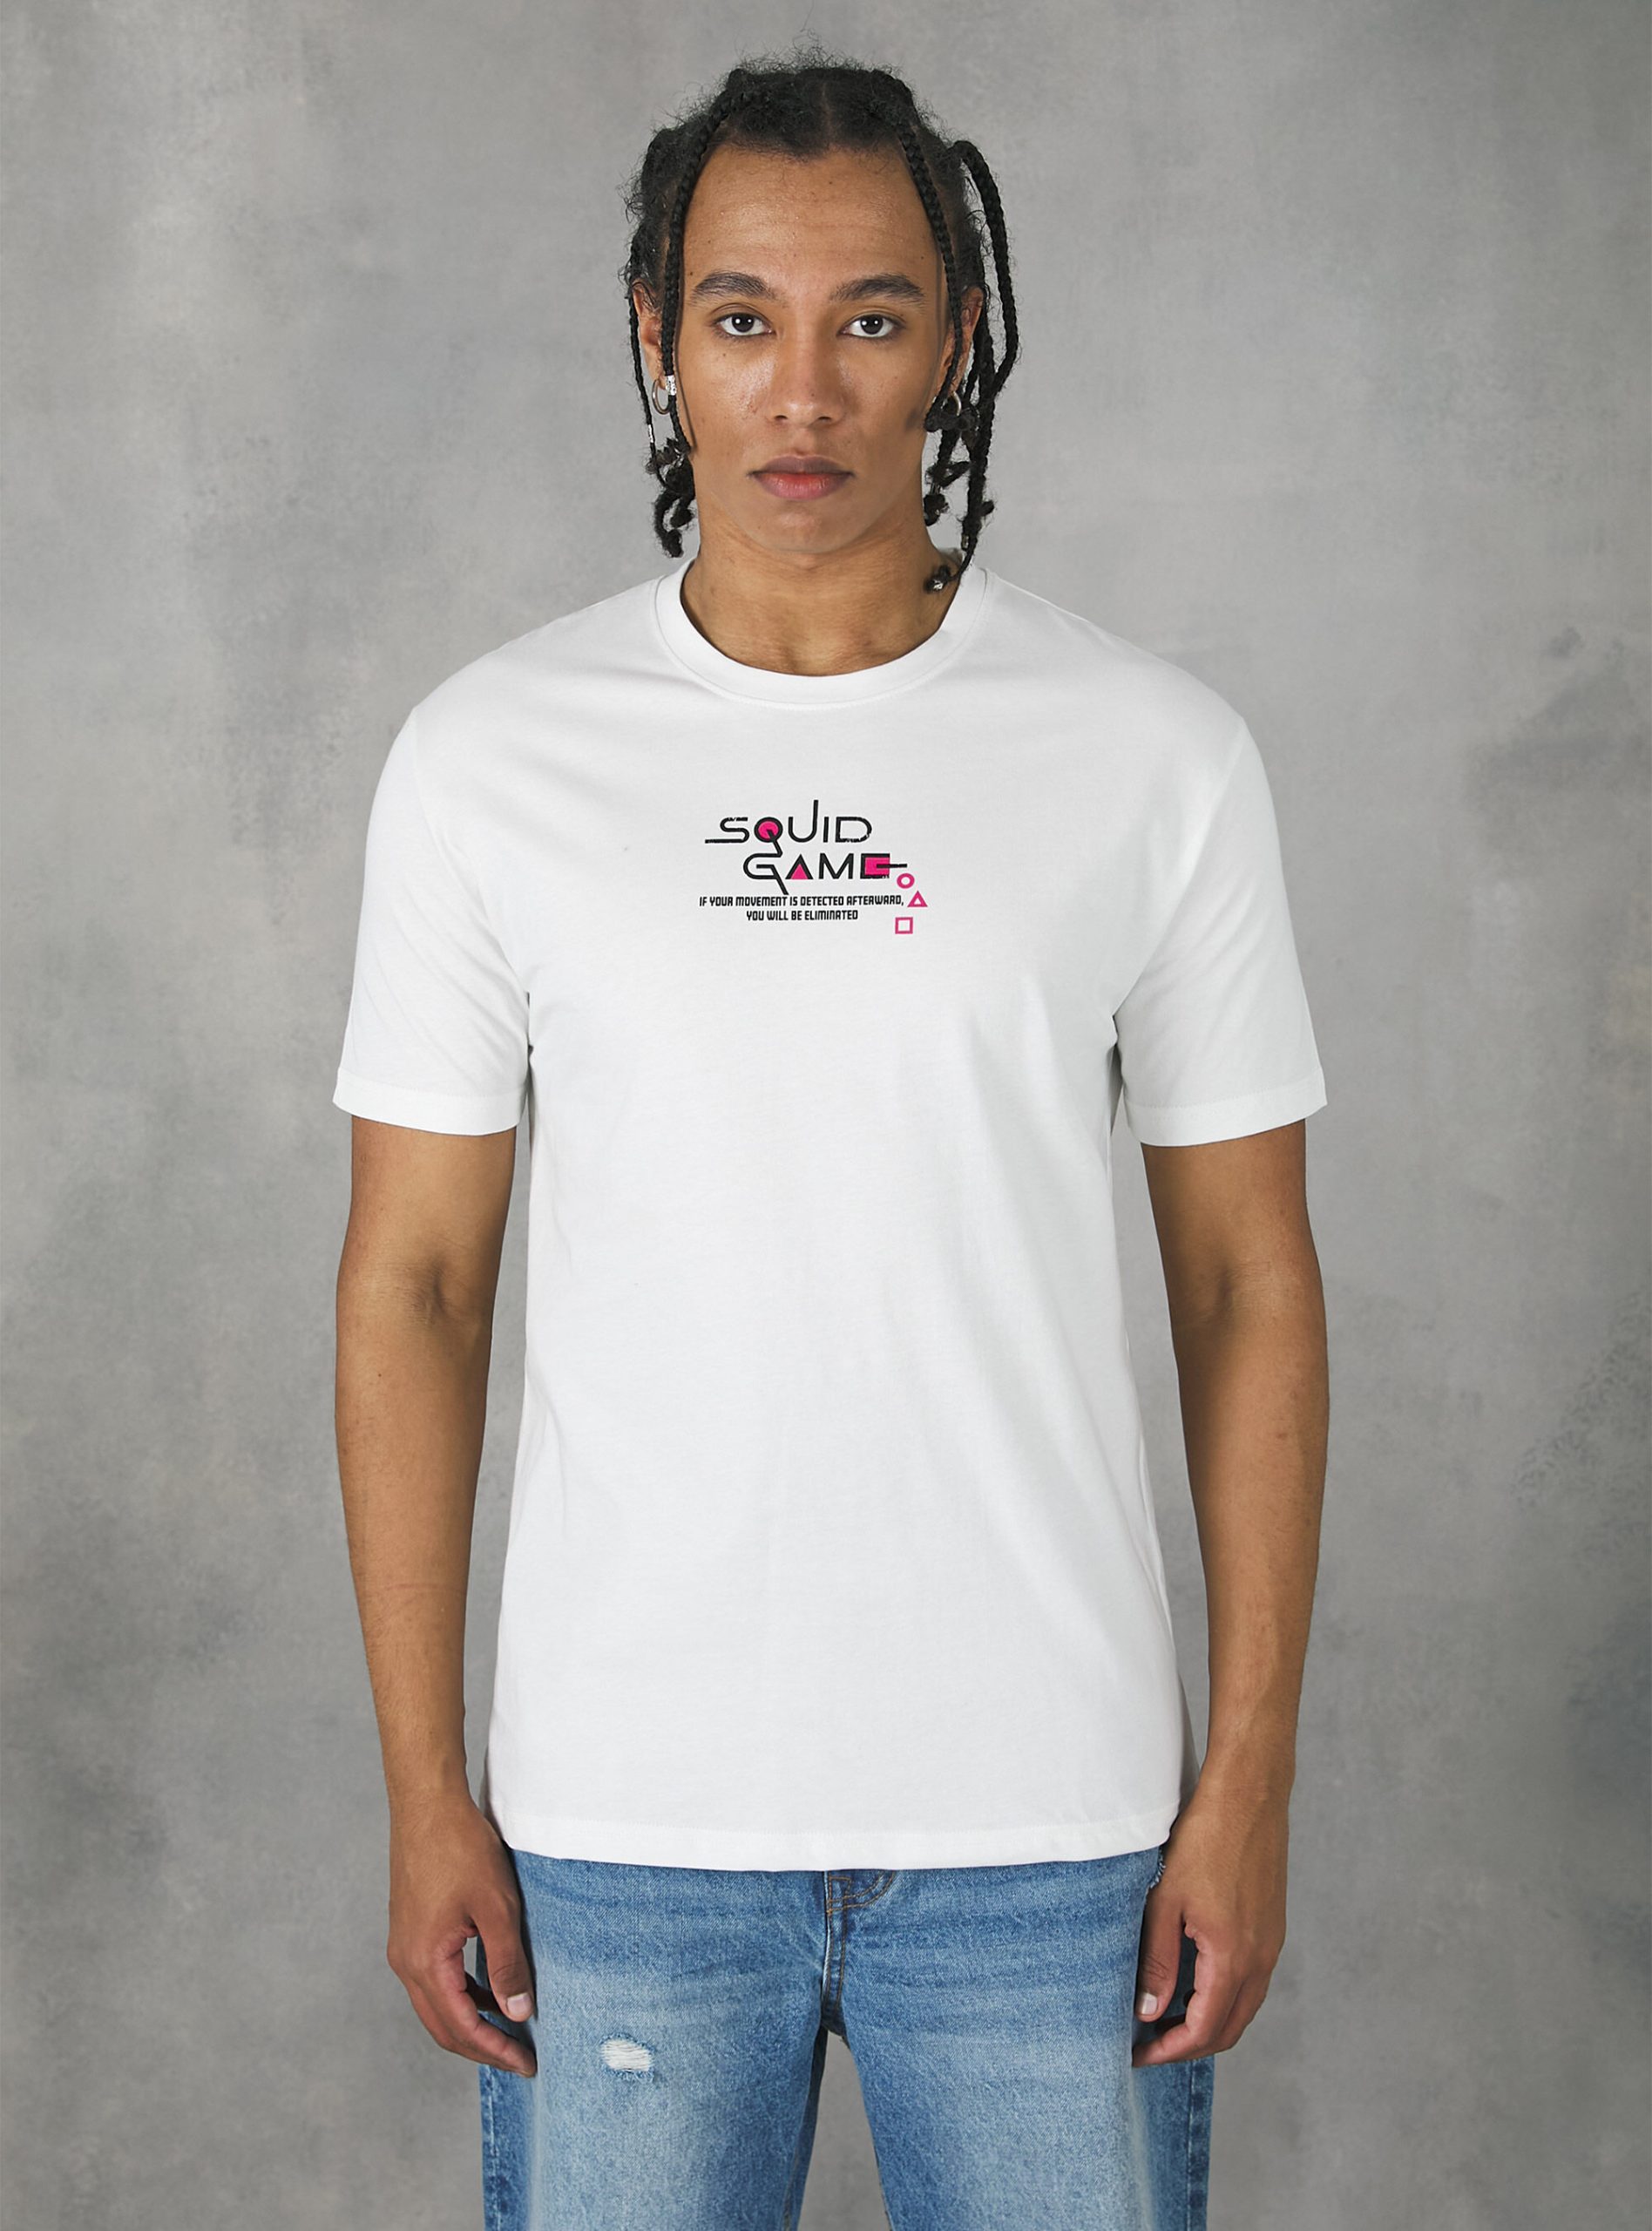 Männer Wh2 White Markenpositionierung Squid Game T-Shirt / Alcott T-Shirts – 2